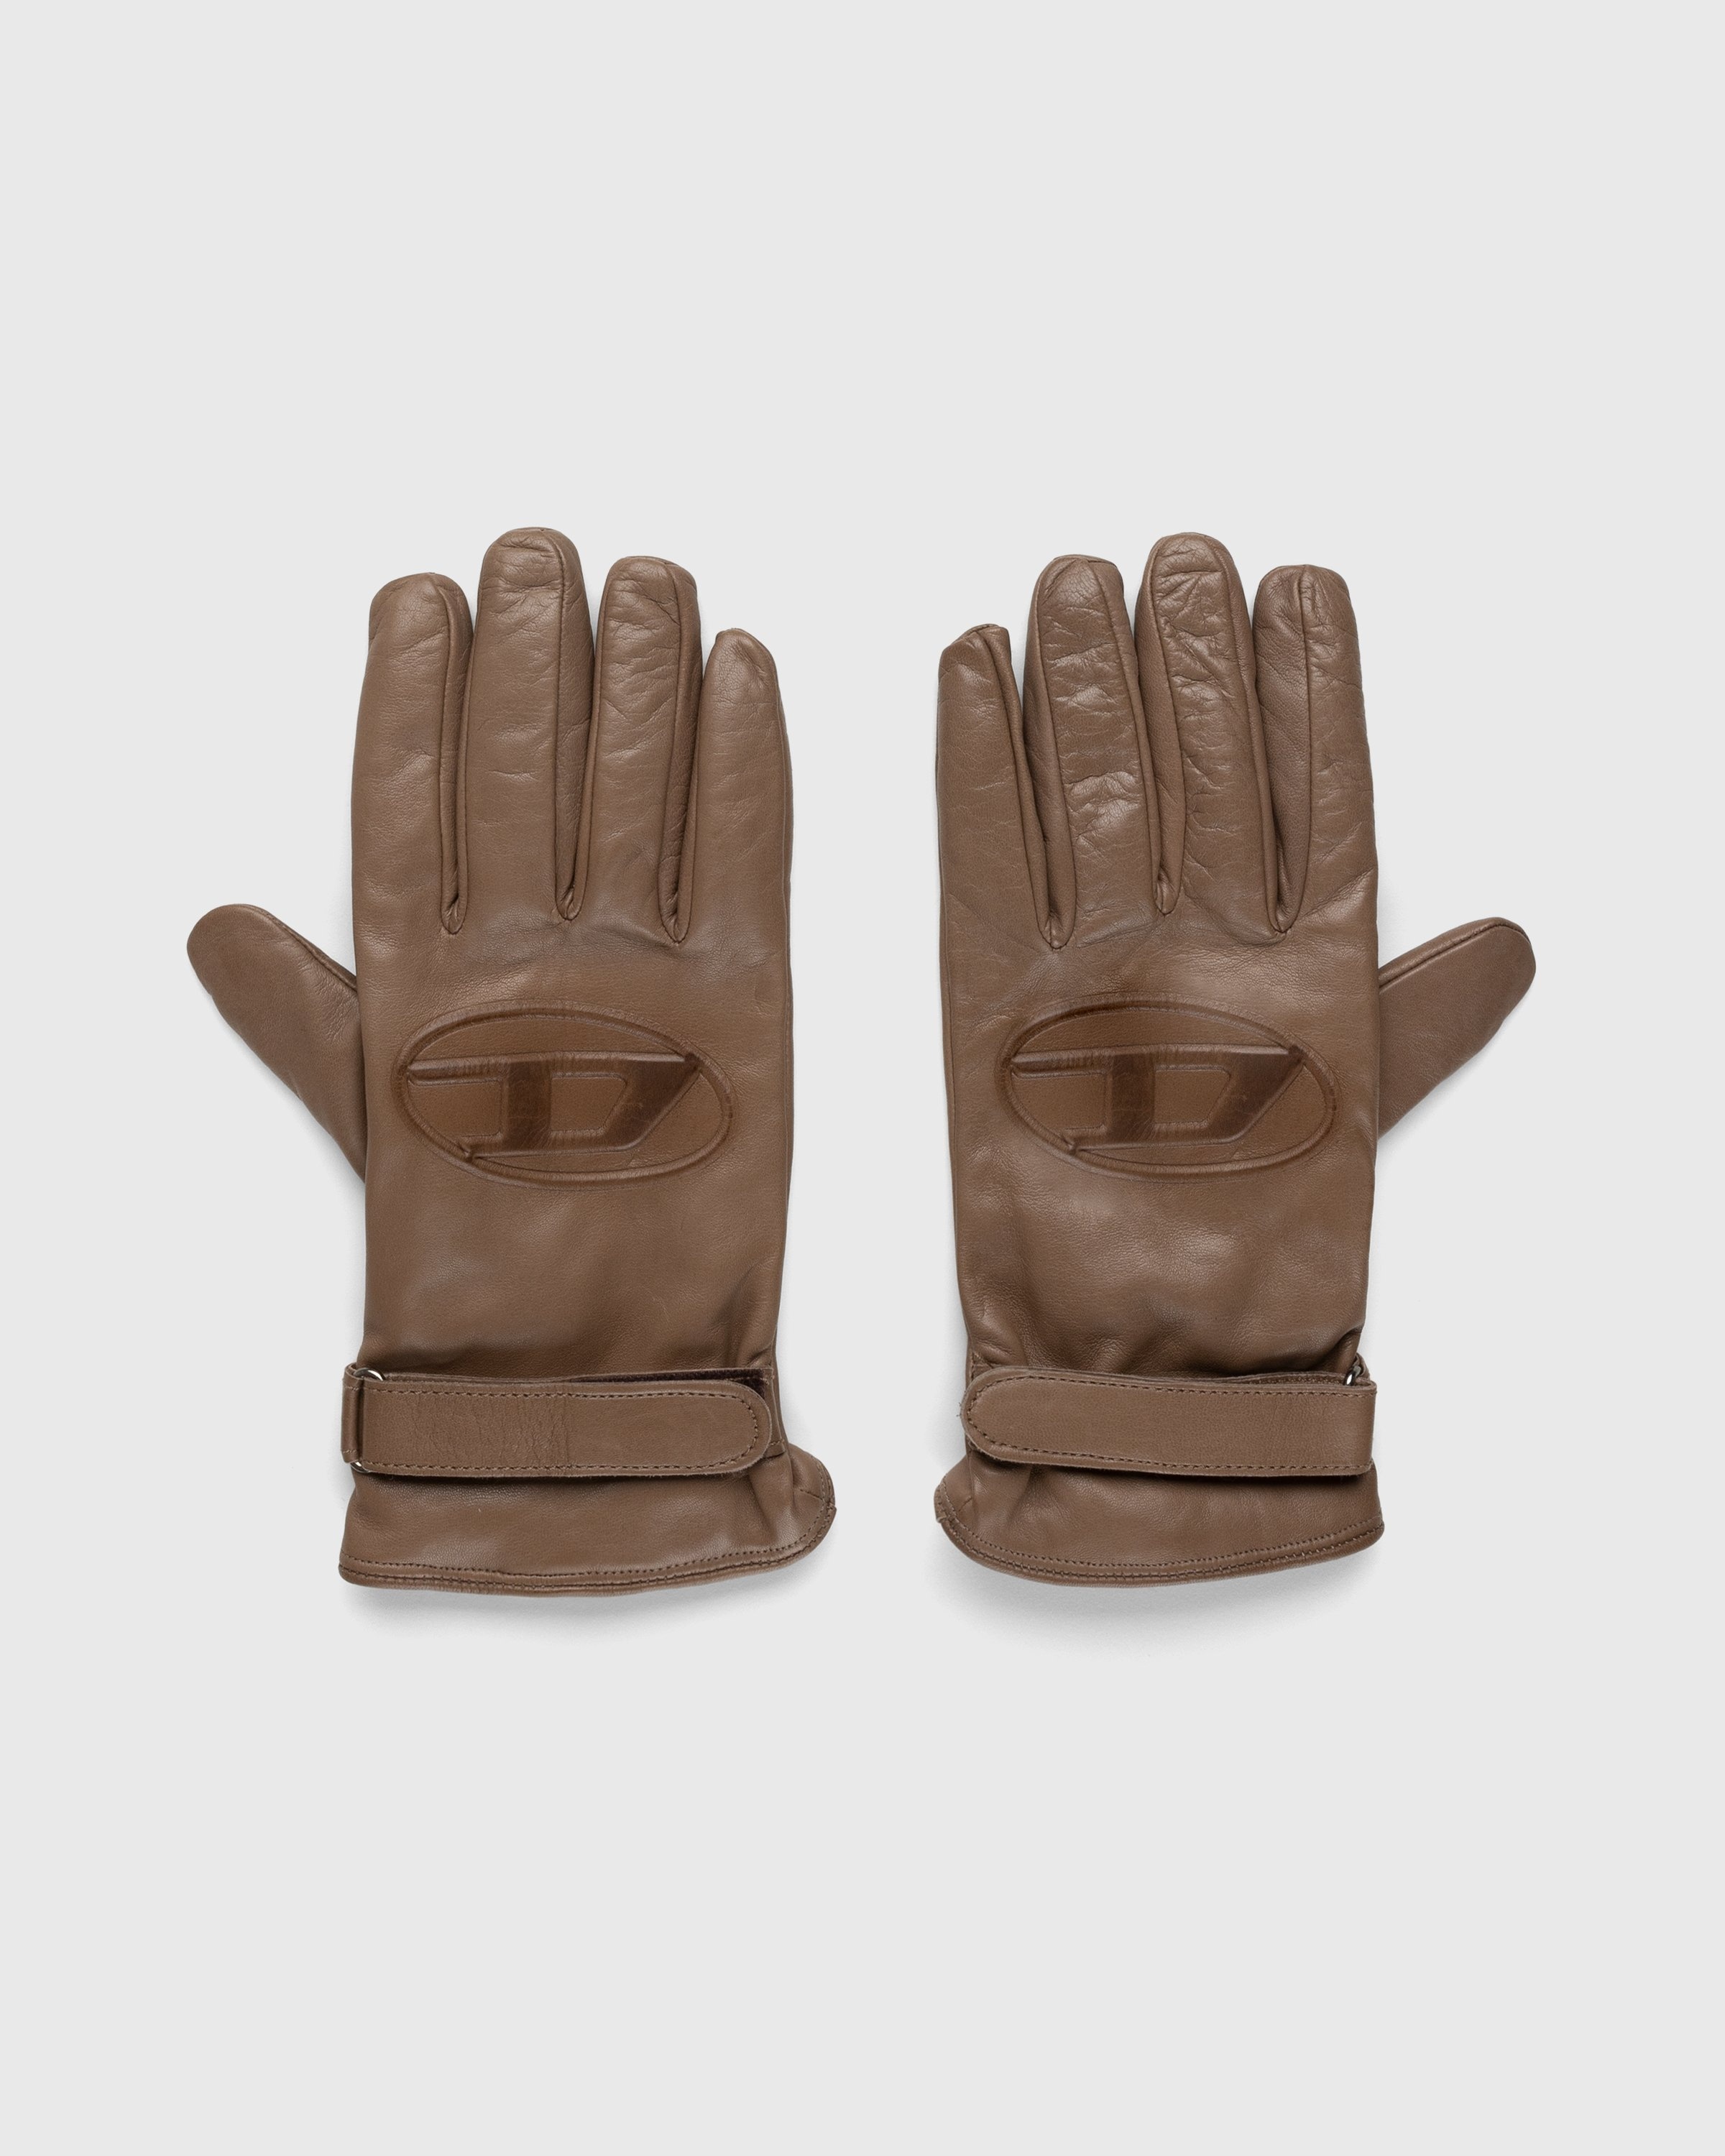 Diesel – Dermont Gloves Beige - Gloves - Beige - Image 1